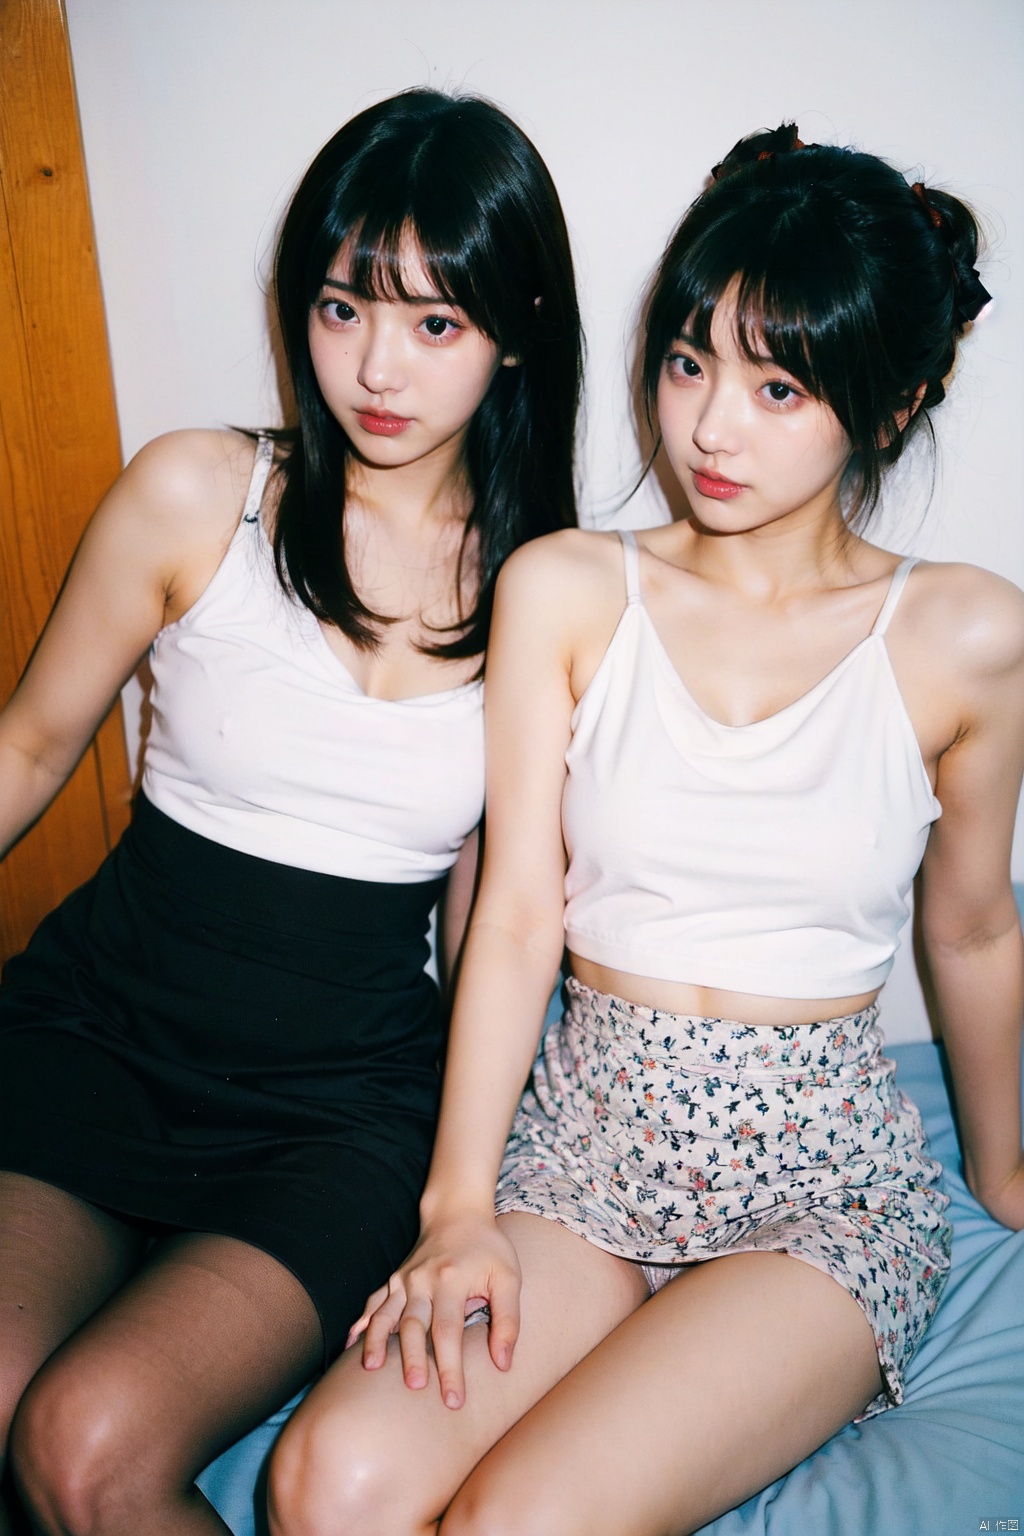  2girls,2_girls,yuri,girl's_love,yuri (dirty pair) (cosplay),black pantyhose, Detail, takei film